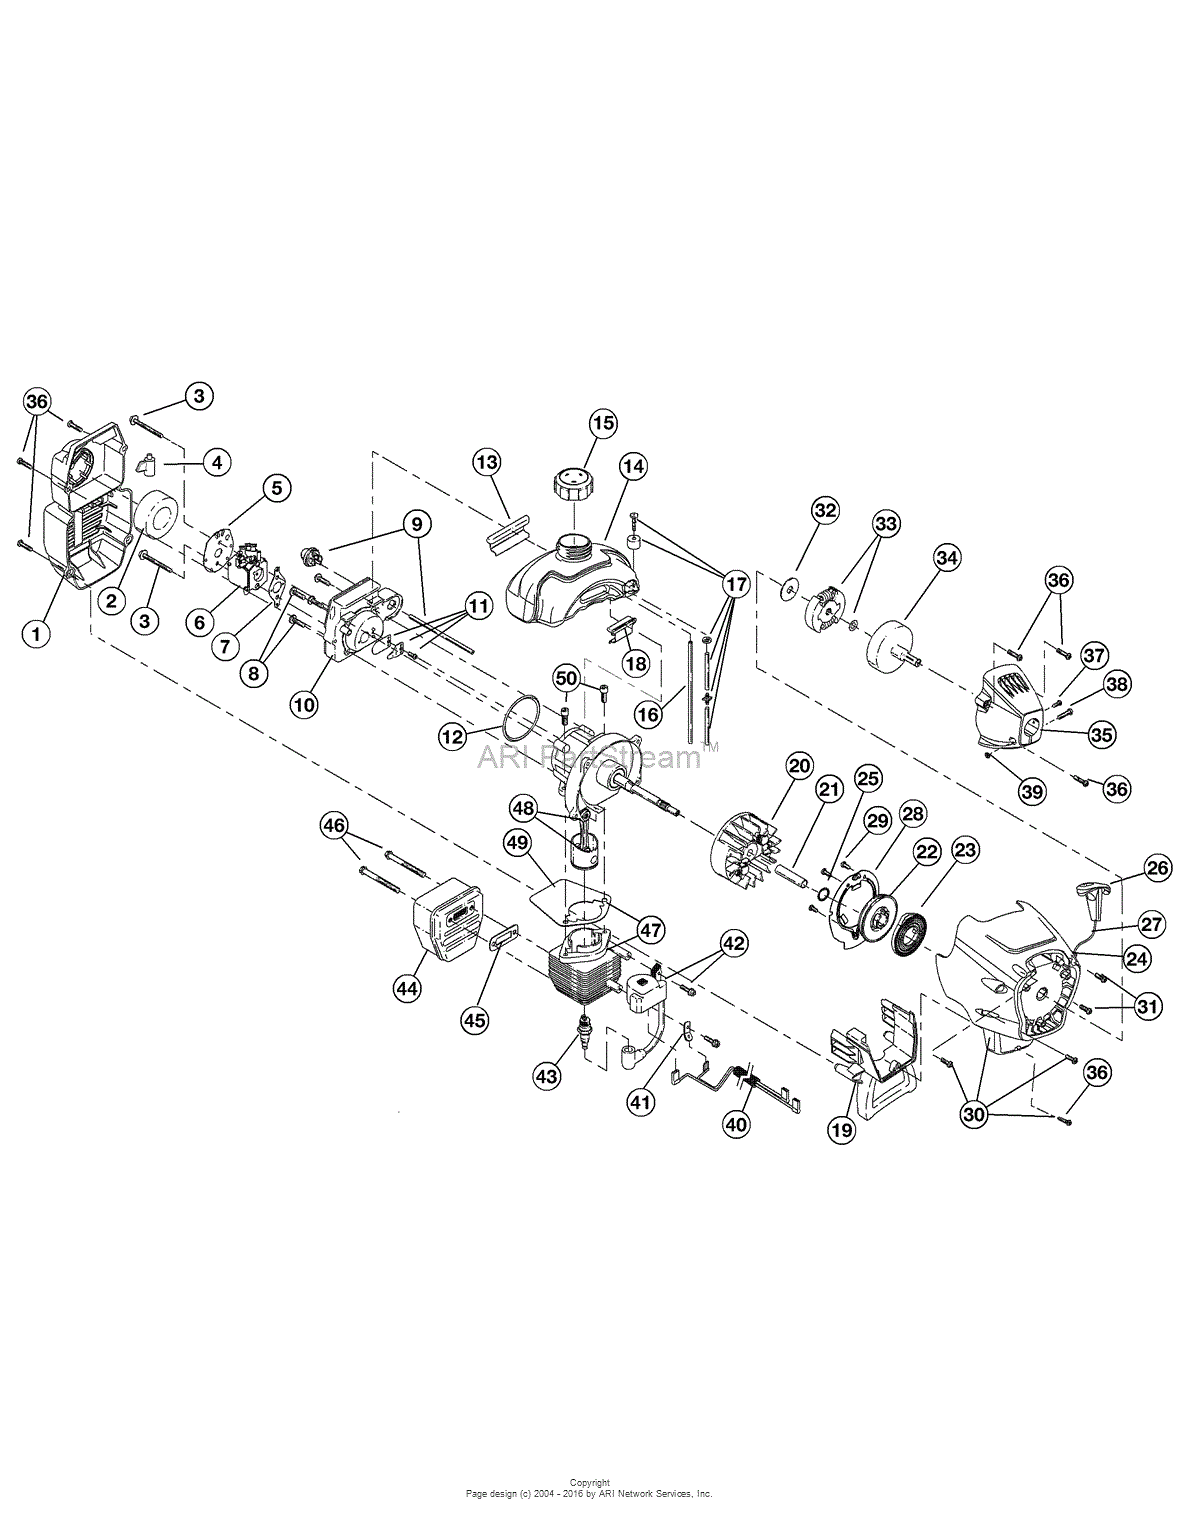 Craftsman Leaf Blower Fuel Line Diagram